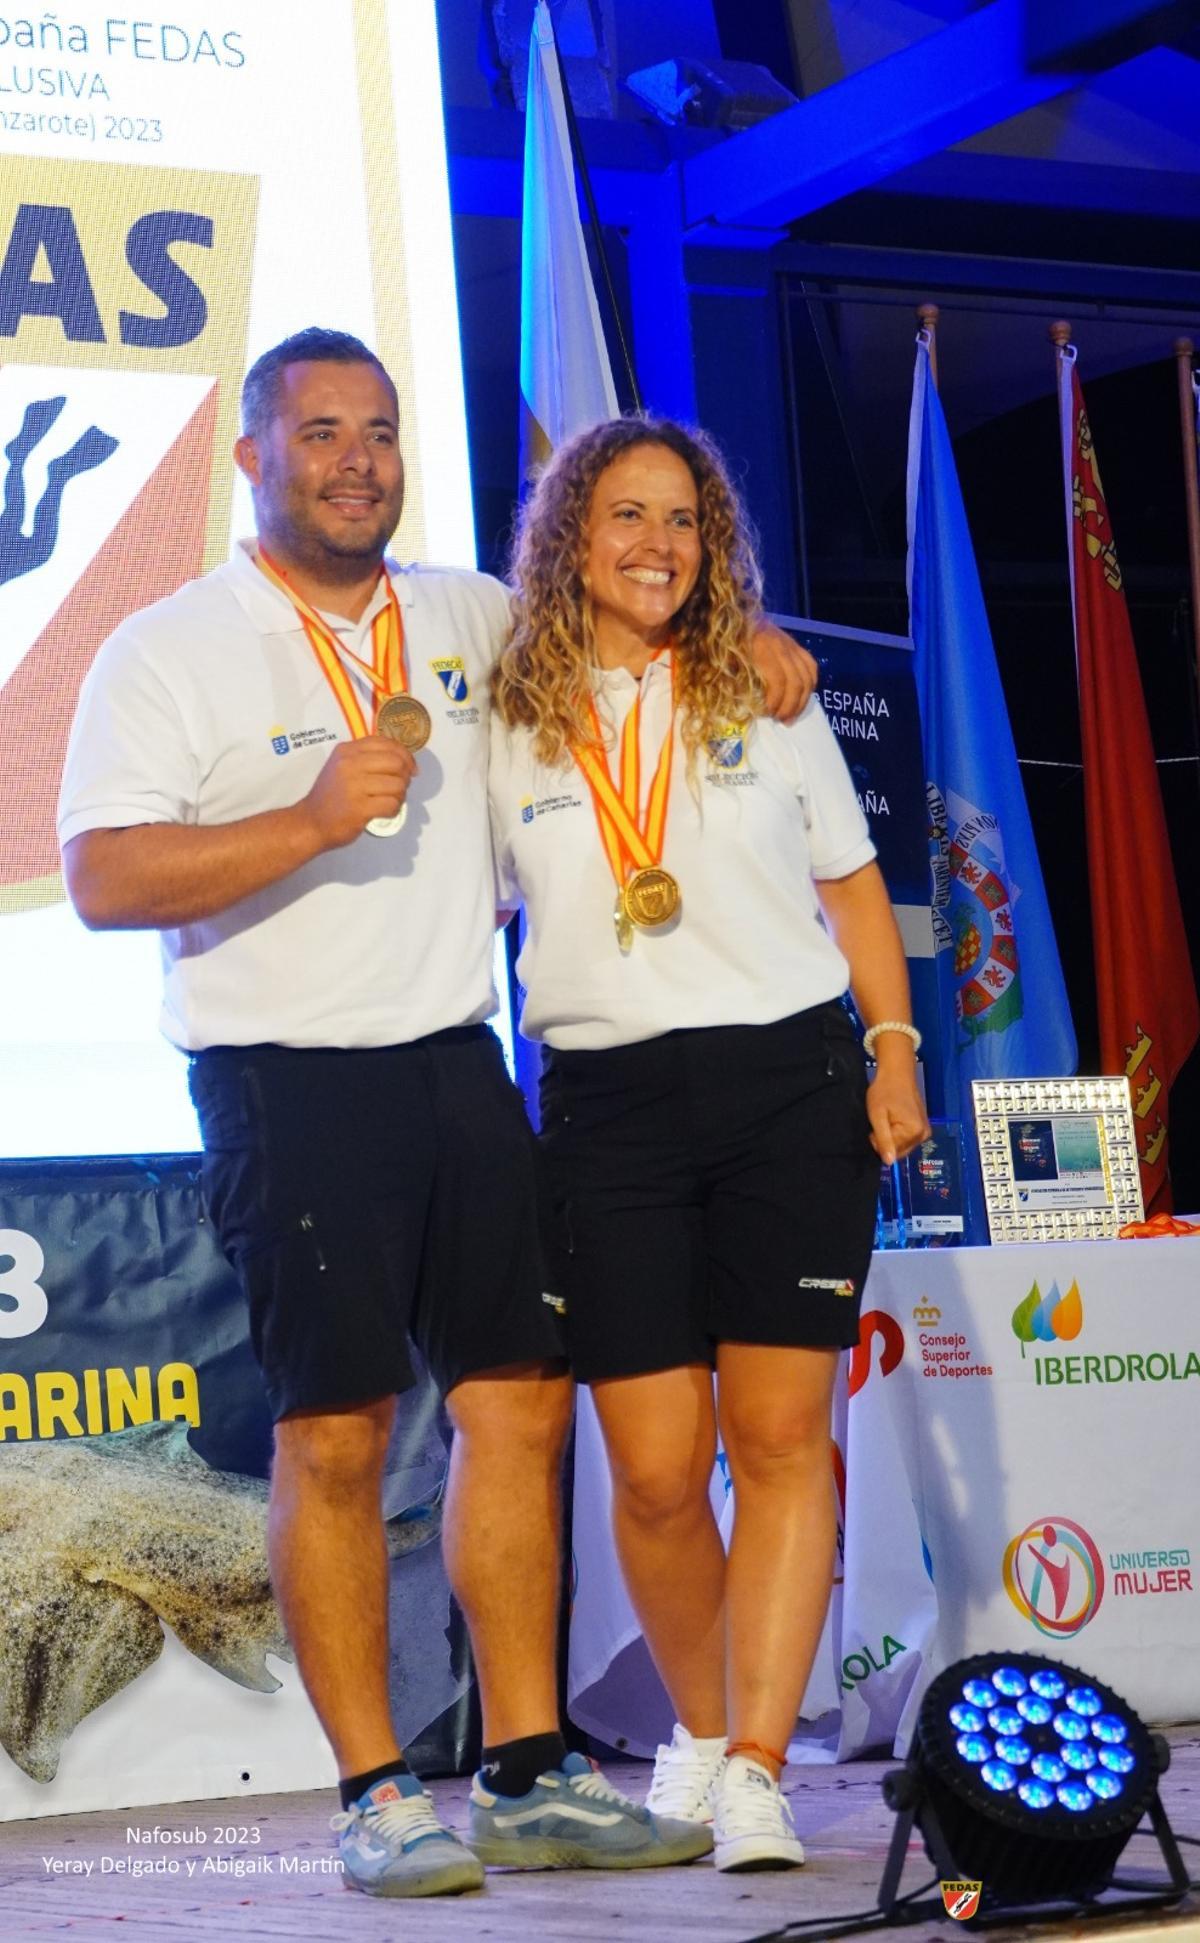 Yeray Delgado y Abigail Martín, ganadores del XXXV Campeonato de España de Fotografía Submarina celebrado en Lanzarote